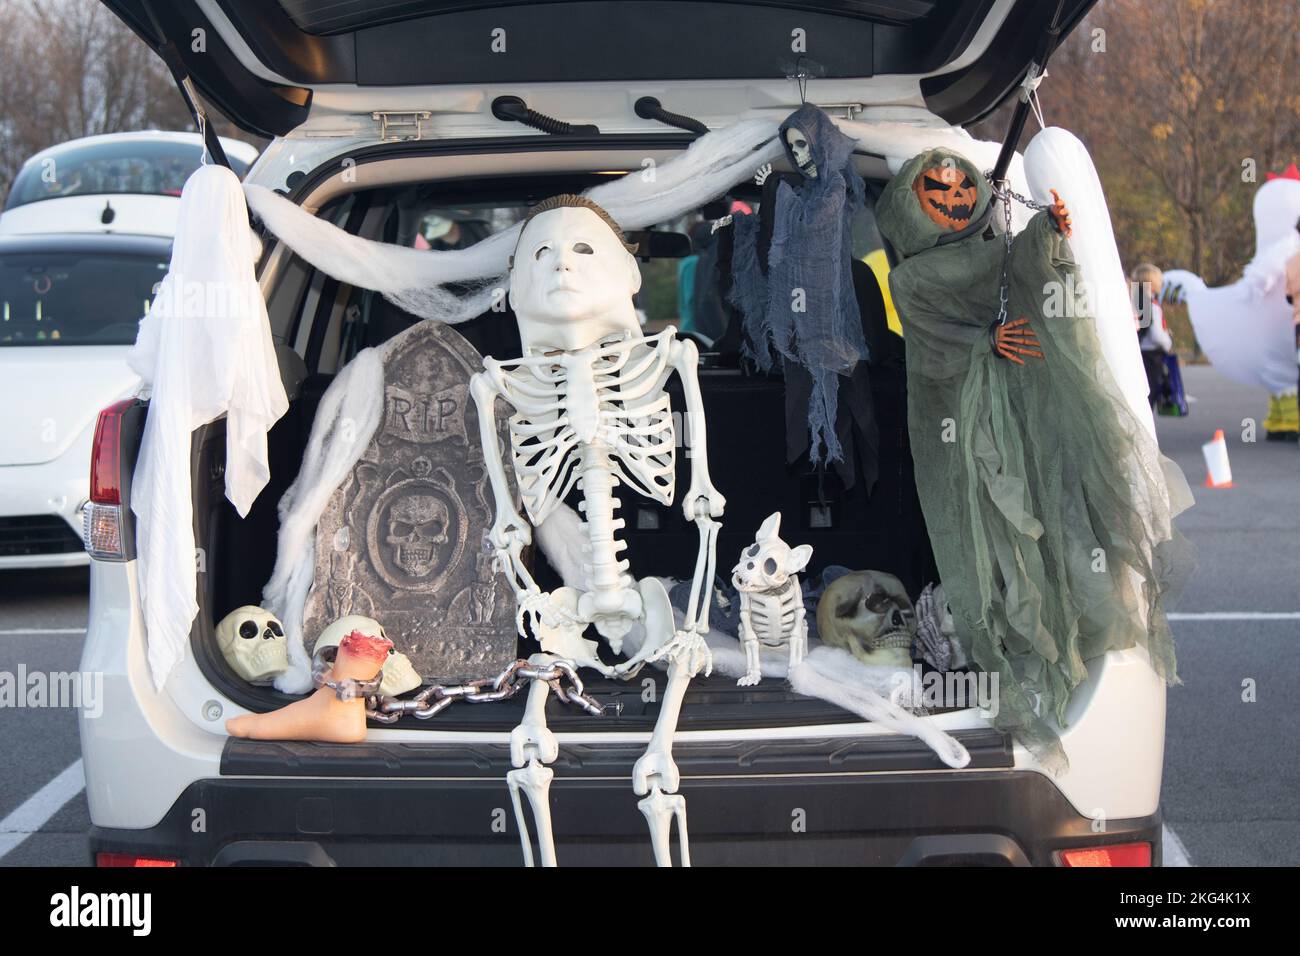 Soldaten des Bataillons der Bergdivision 10. feiern am 29. Oktober 2022 auf Fort Drum, N.Y., einen jährlichen „Trunk or Treat“, bei dem Soldaten Süßigkeiten aus den geschmückten Koffern ihrer Fahrzeuge an Kinder verteilten, um Halloween zu feiern. Stockfoto